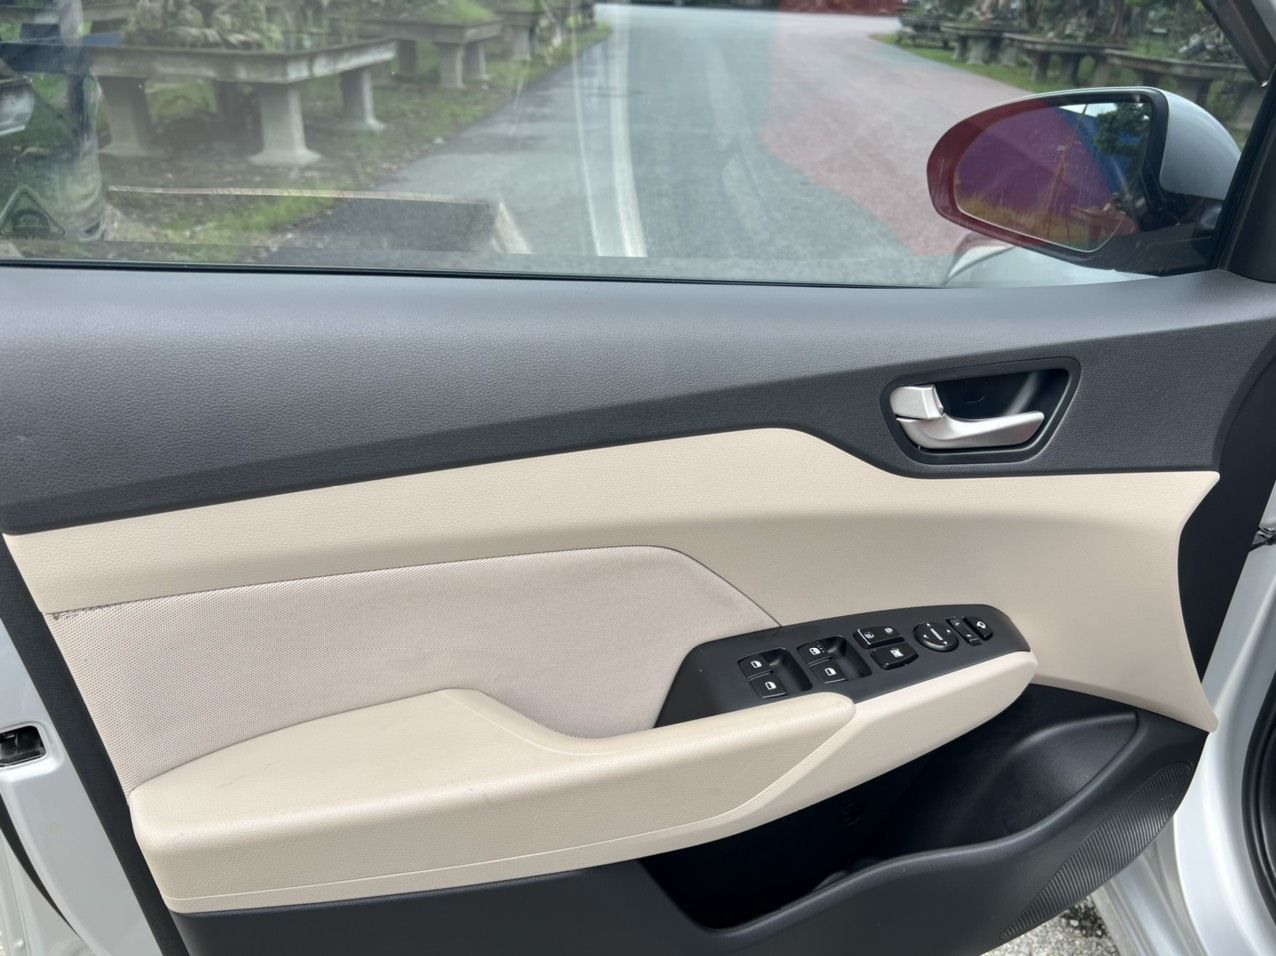 Hyundai Accent 2019 - Bán gấp xe đẹp như mới + bao cam kết đâm đụng ngập nước + hỗ trợ bank 70%